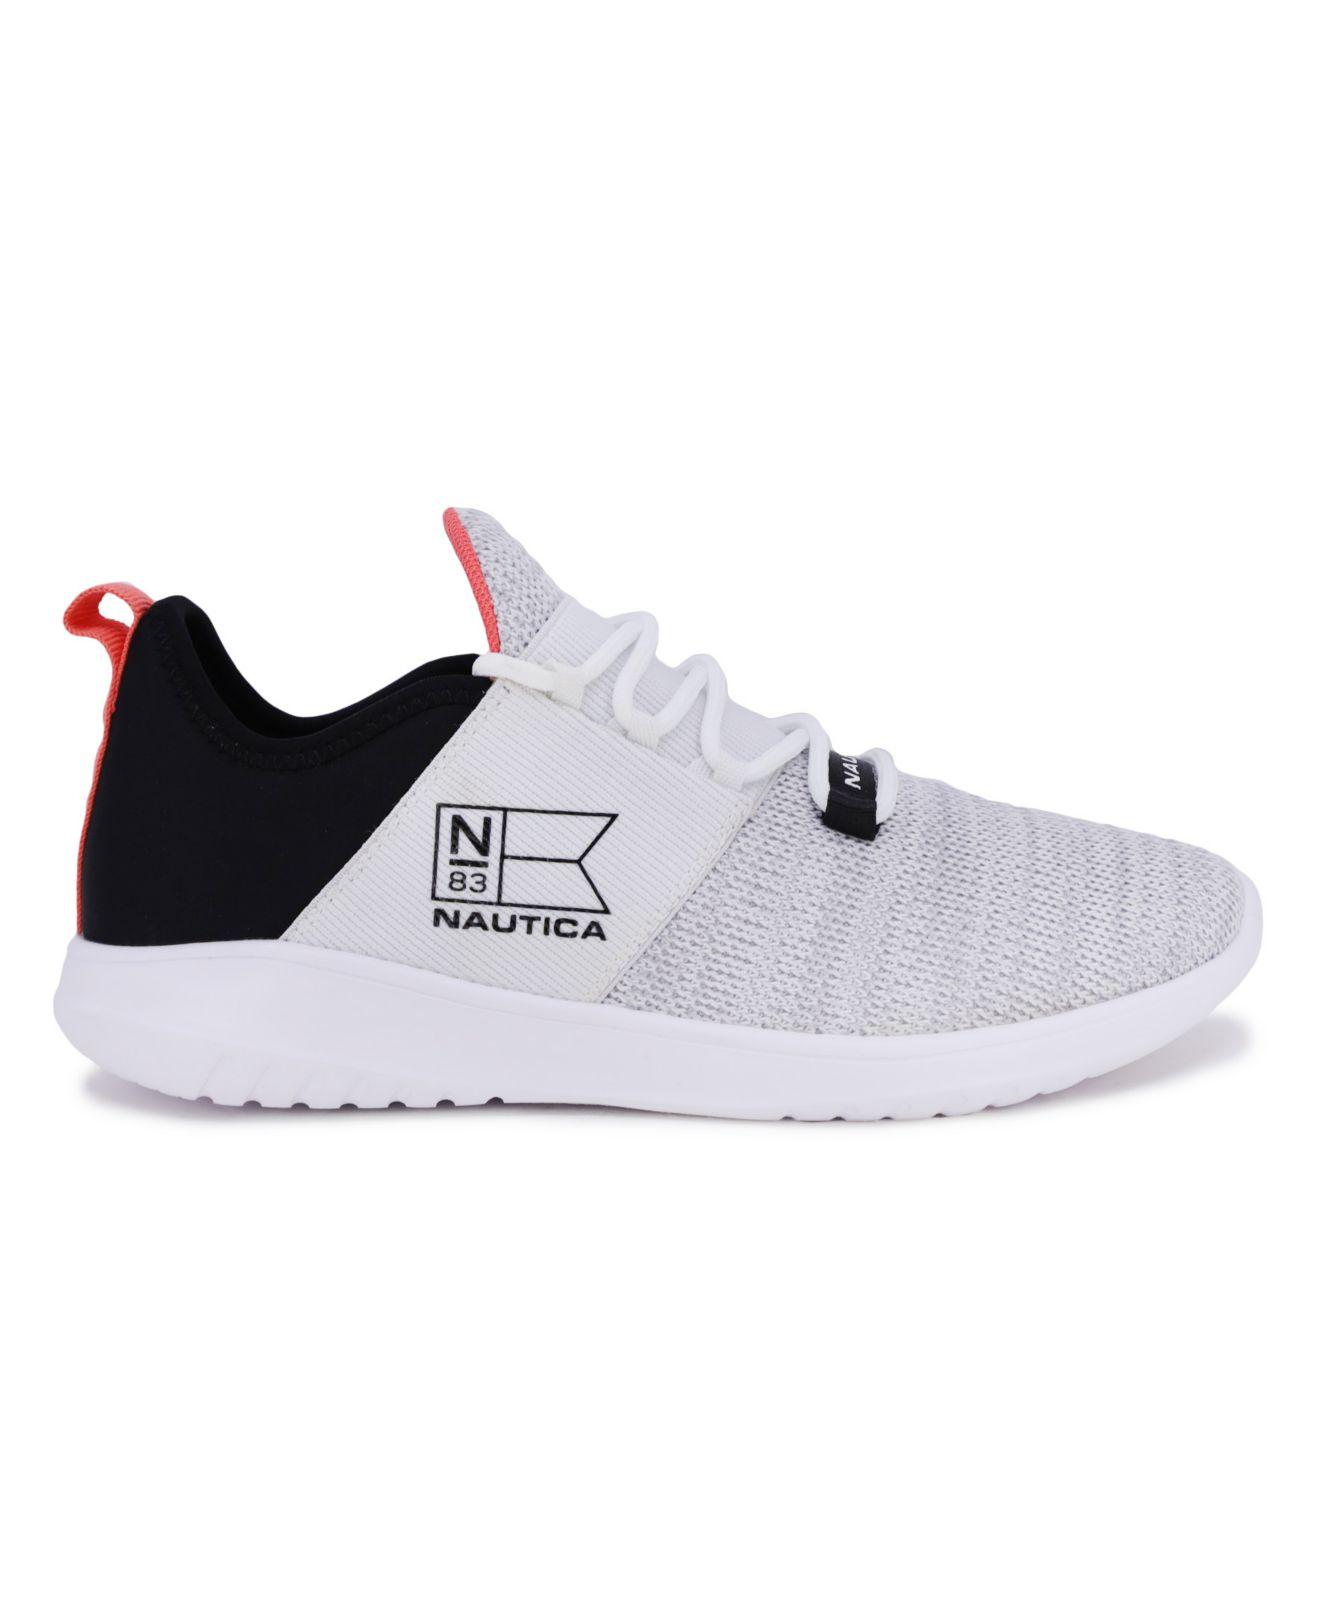 Buy Nautica Shoes online | Lazada.com.ph-saigonsouth.com.vn